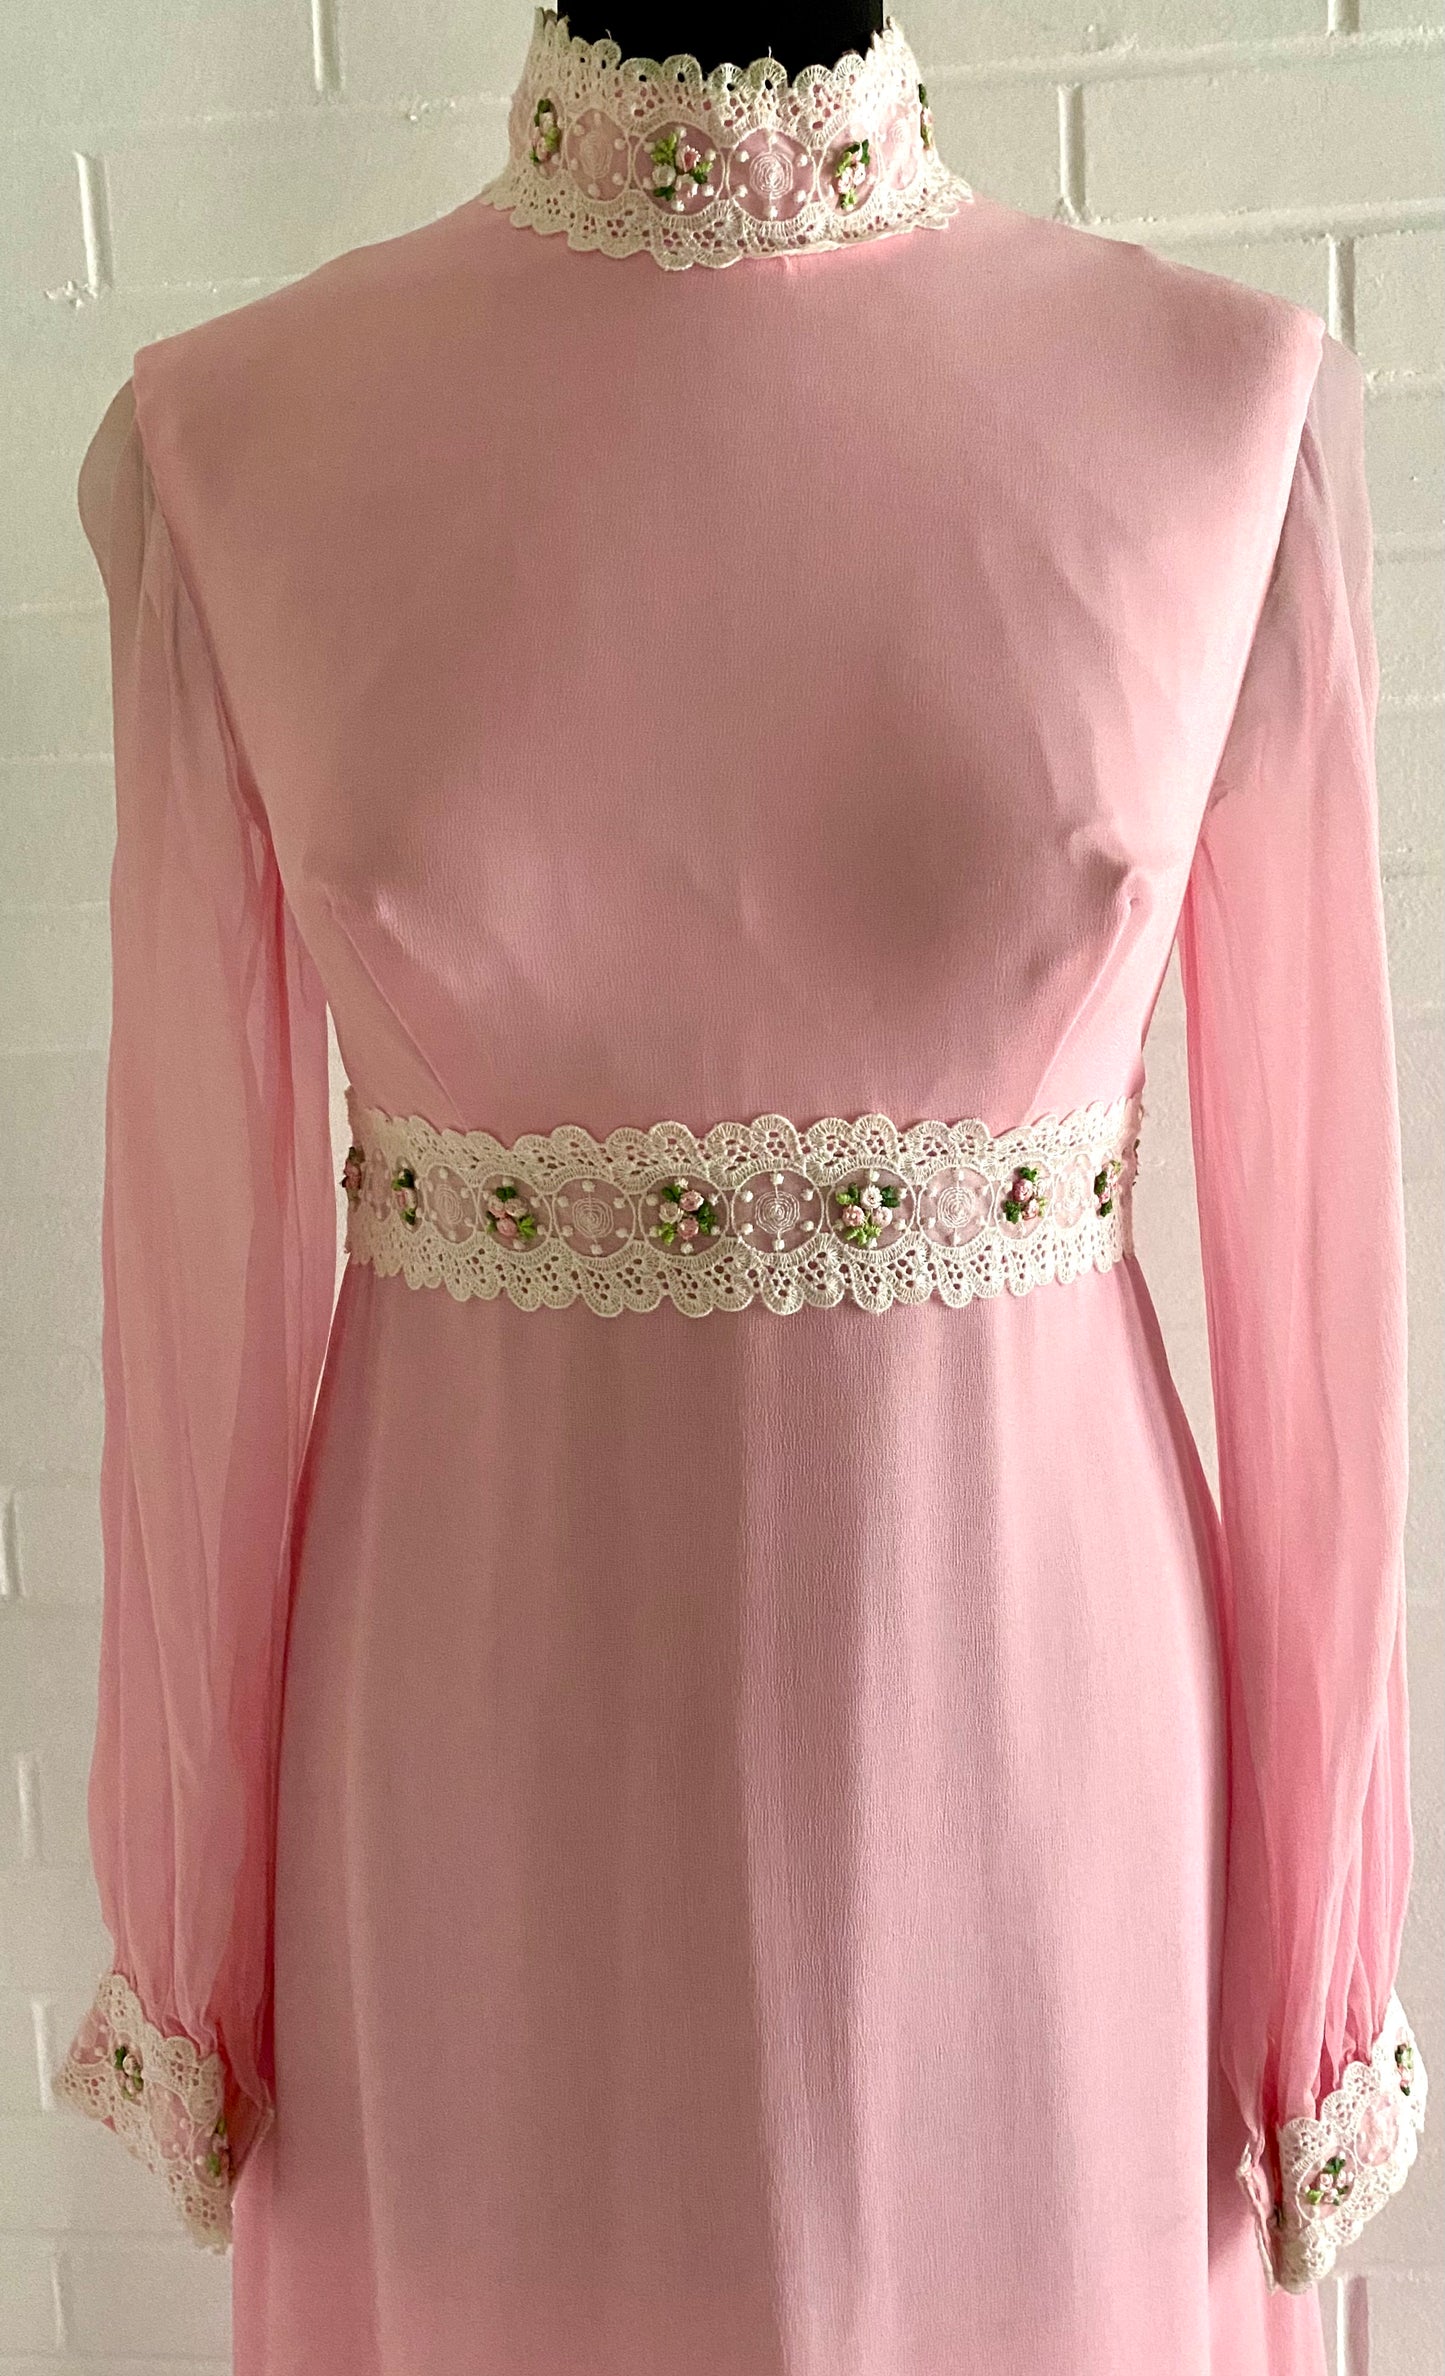 Late 50s/ Early 60s Pink Chiffon Maxi Dress